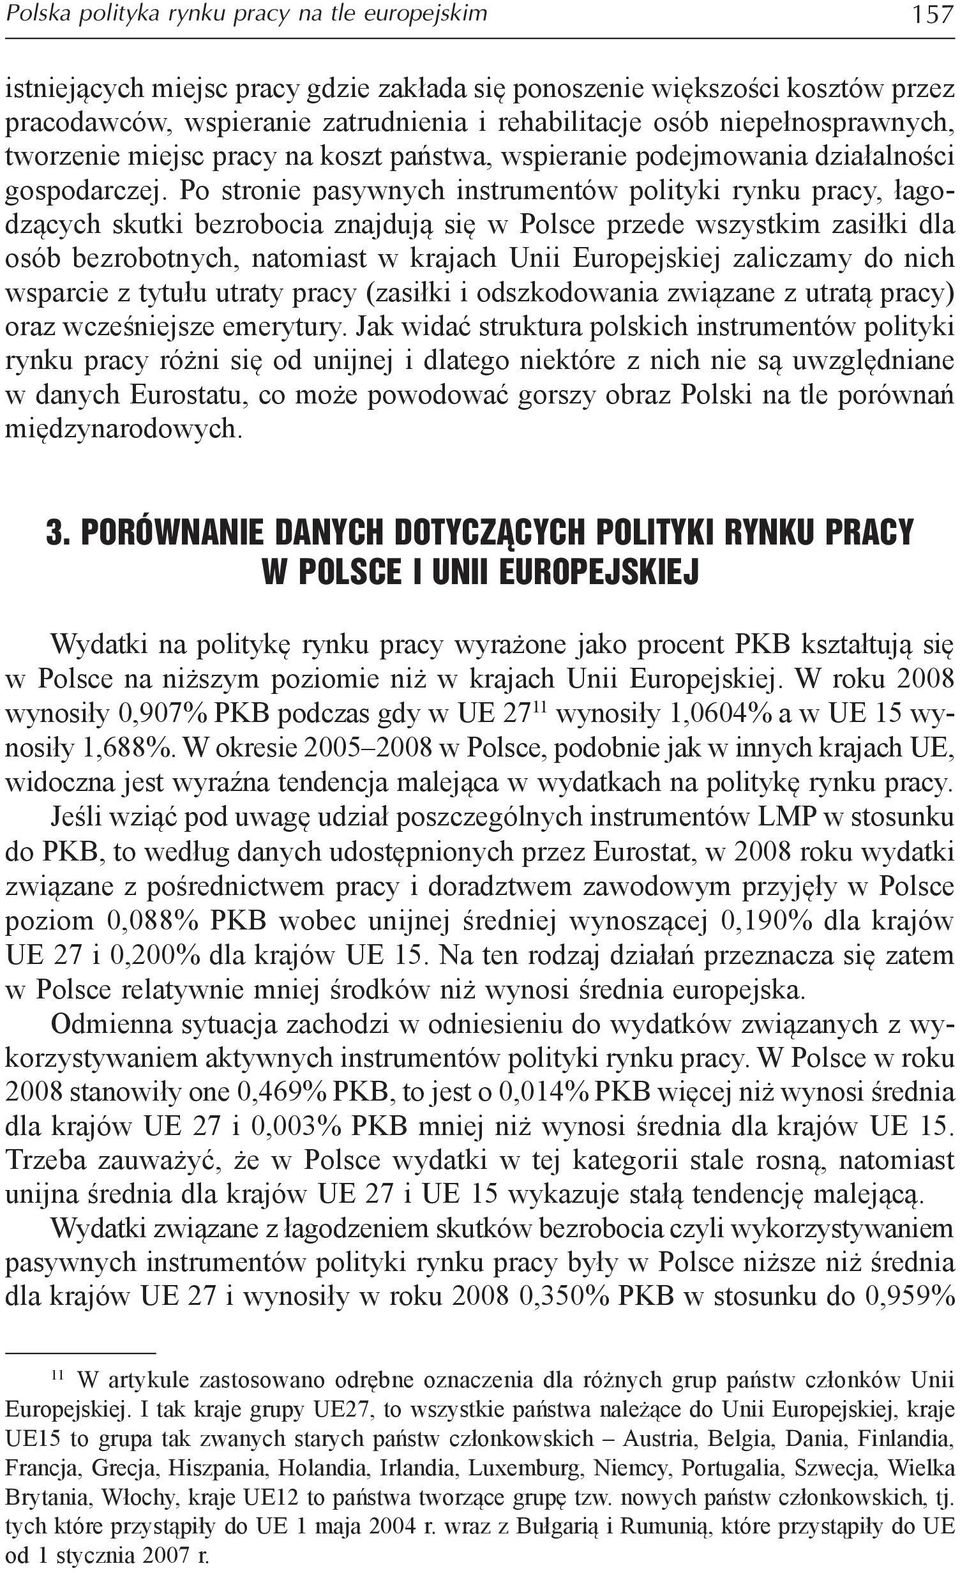 Po stronie pasywnych instrumentów polityki rynku pracy, łagodzących skutki bezrobocia znajdują się w Polsce przede wszystkim zasiłki dla osób bezrobotnych, natomiast w krajach Unii Europejskiej